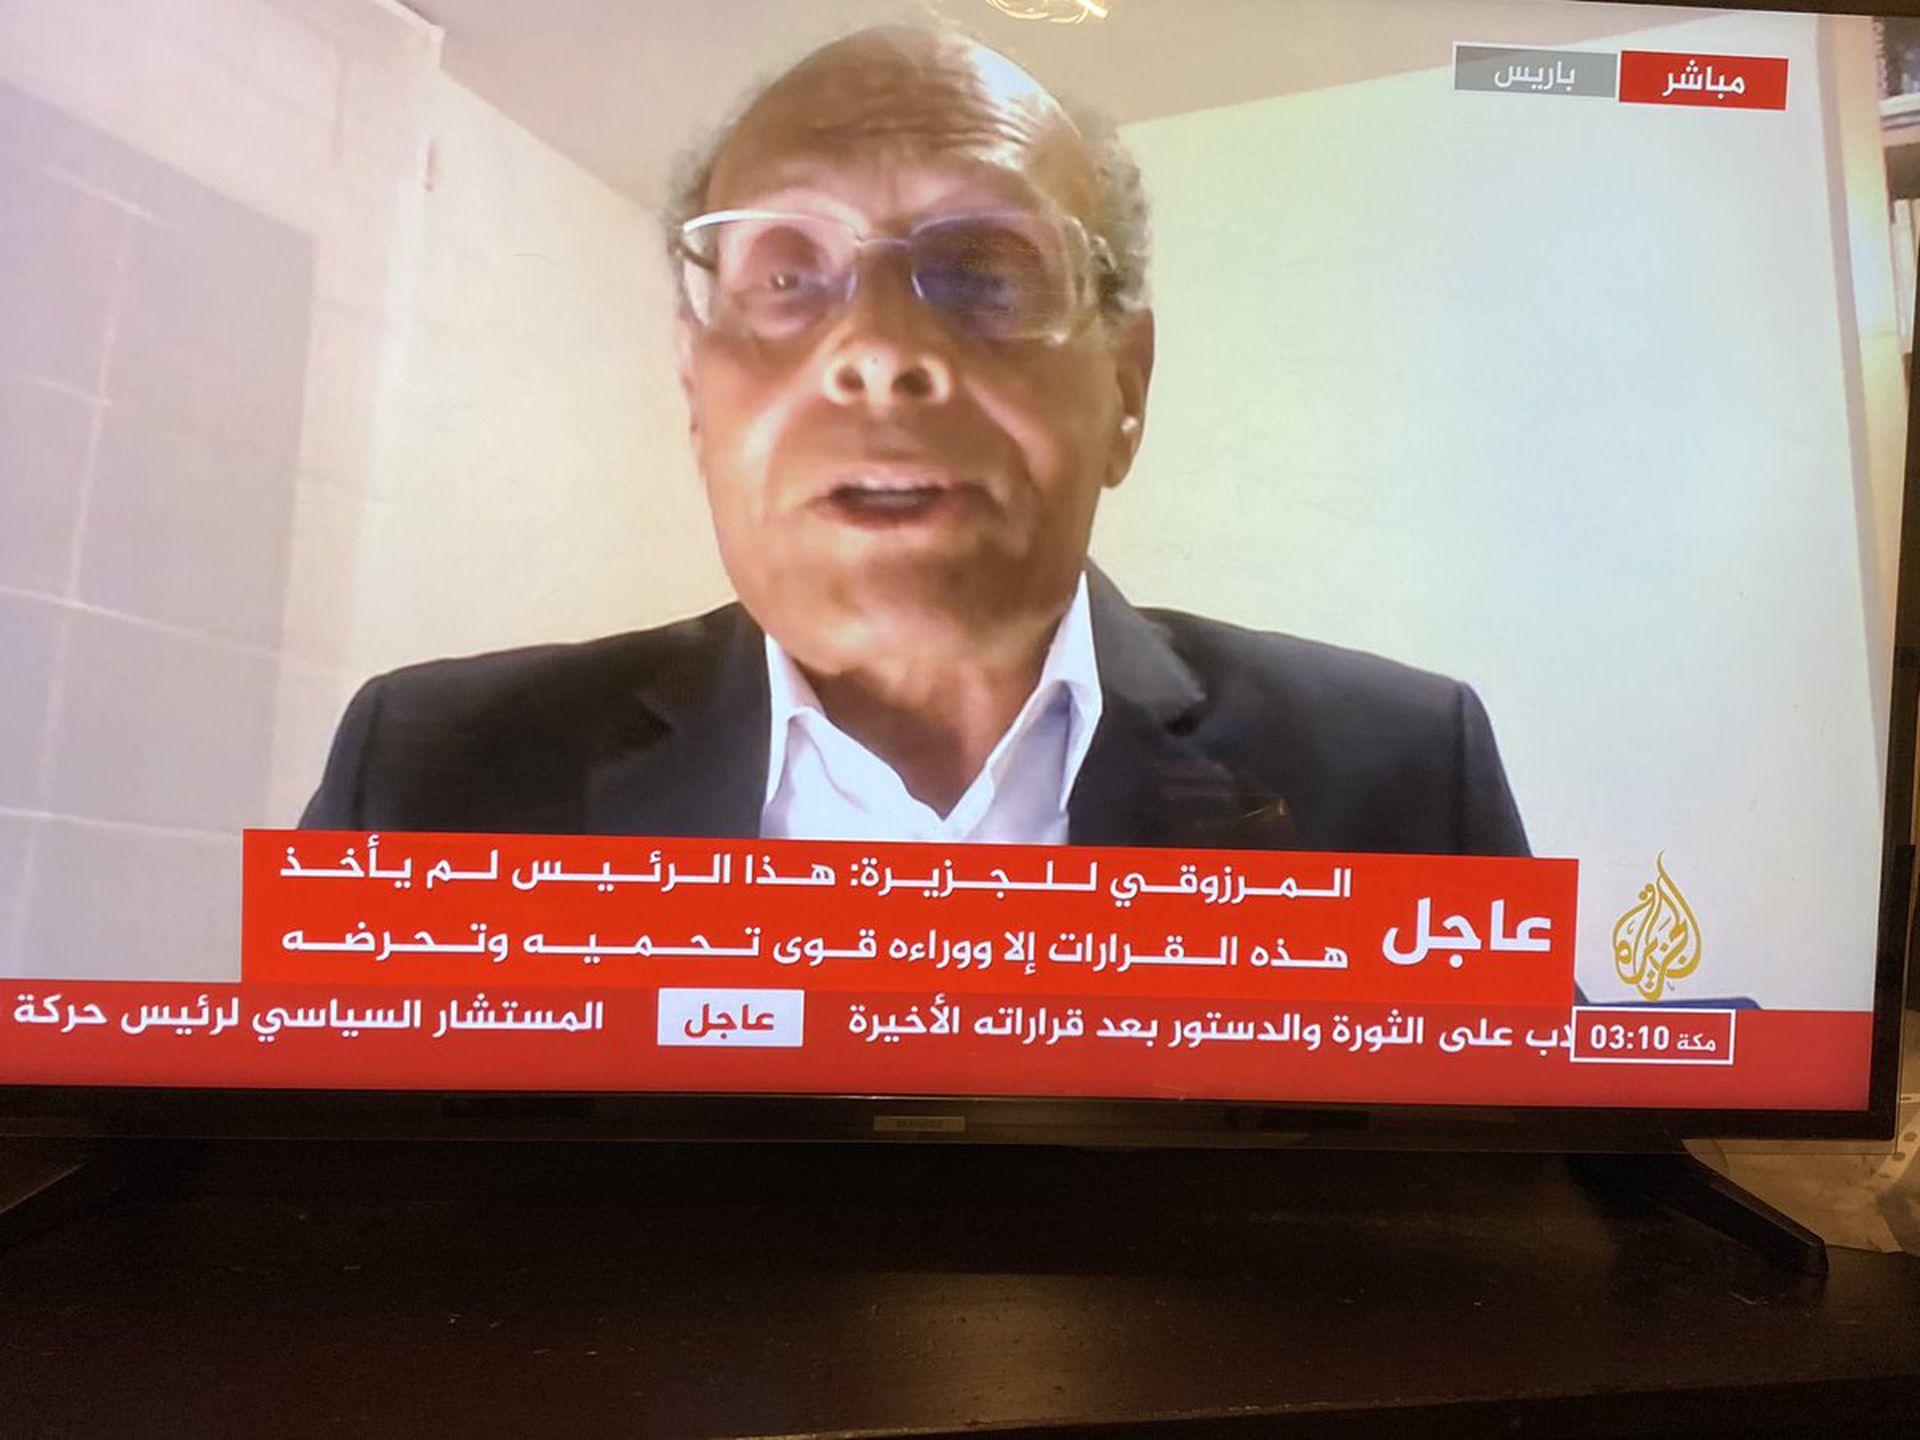 同日，该国部分前政要在半岛电视台上发表讲话，批评此次政变系阿联酋挑唆。（liveumap网页截图）